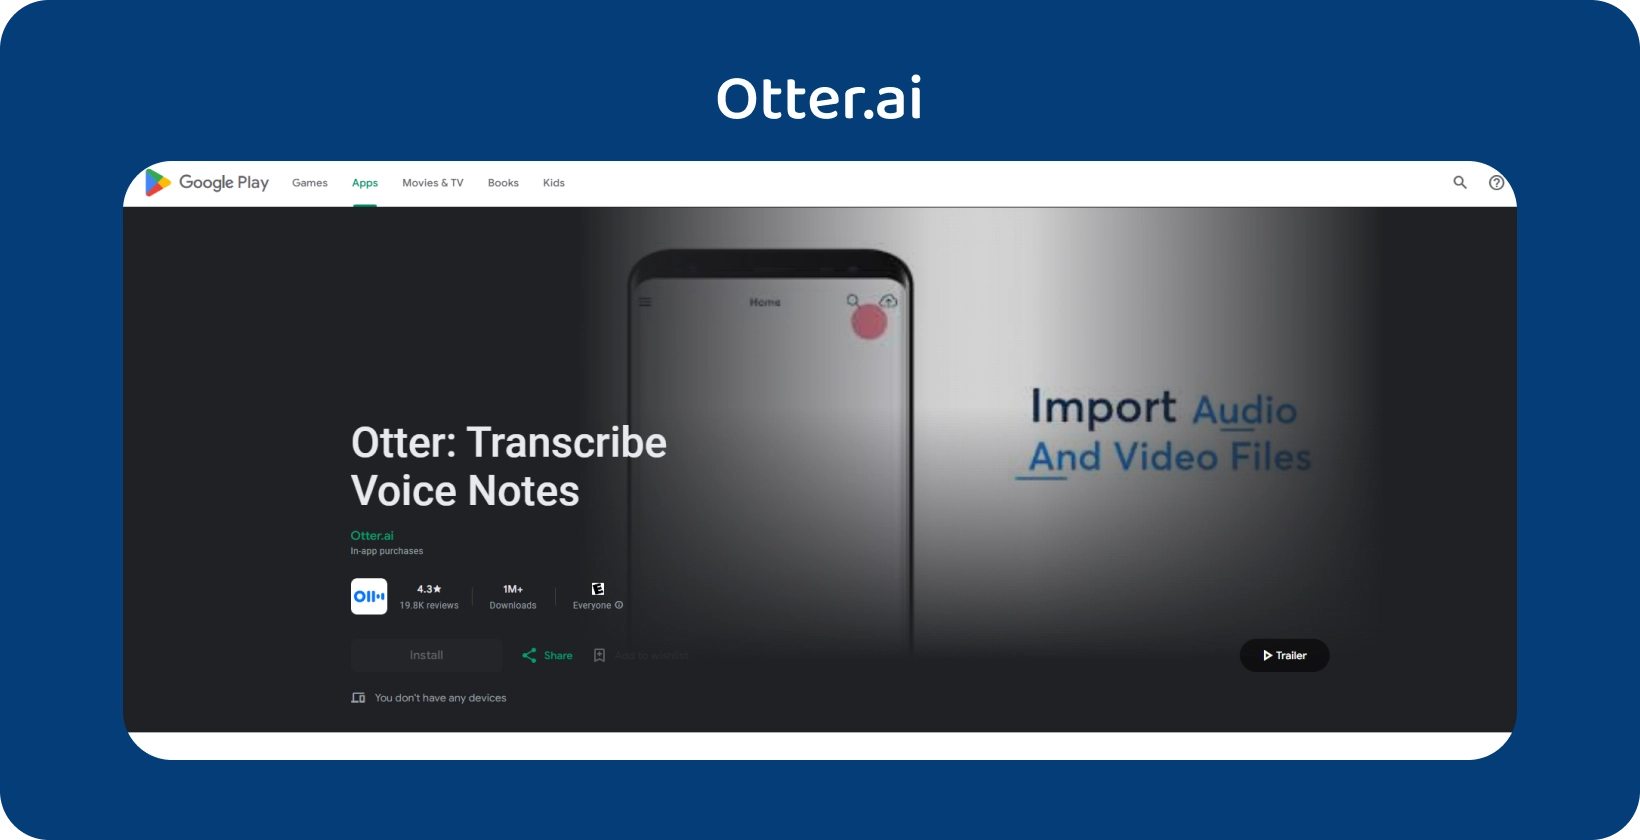 Otter.ai app på Google Play med mulighed for transskription af talebeskeder og import af lyd-/videofiler.